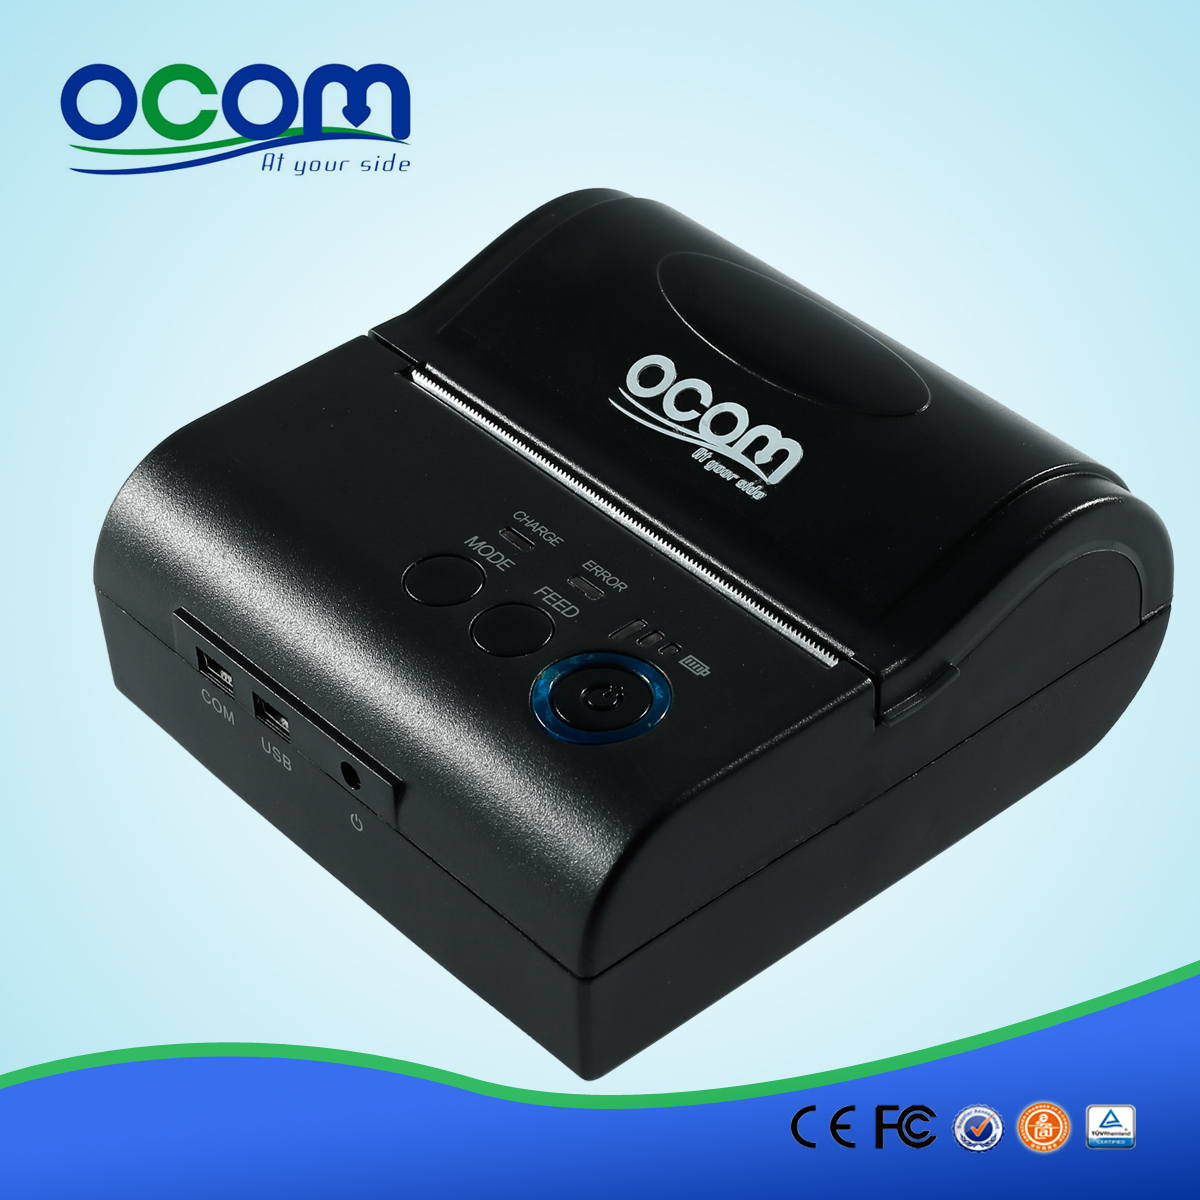 OCPP-M082: vente OCOM Hot pas cher 80mm imprimante bluetooth, imprimante Bluetooth 80mm